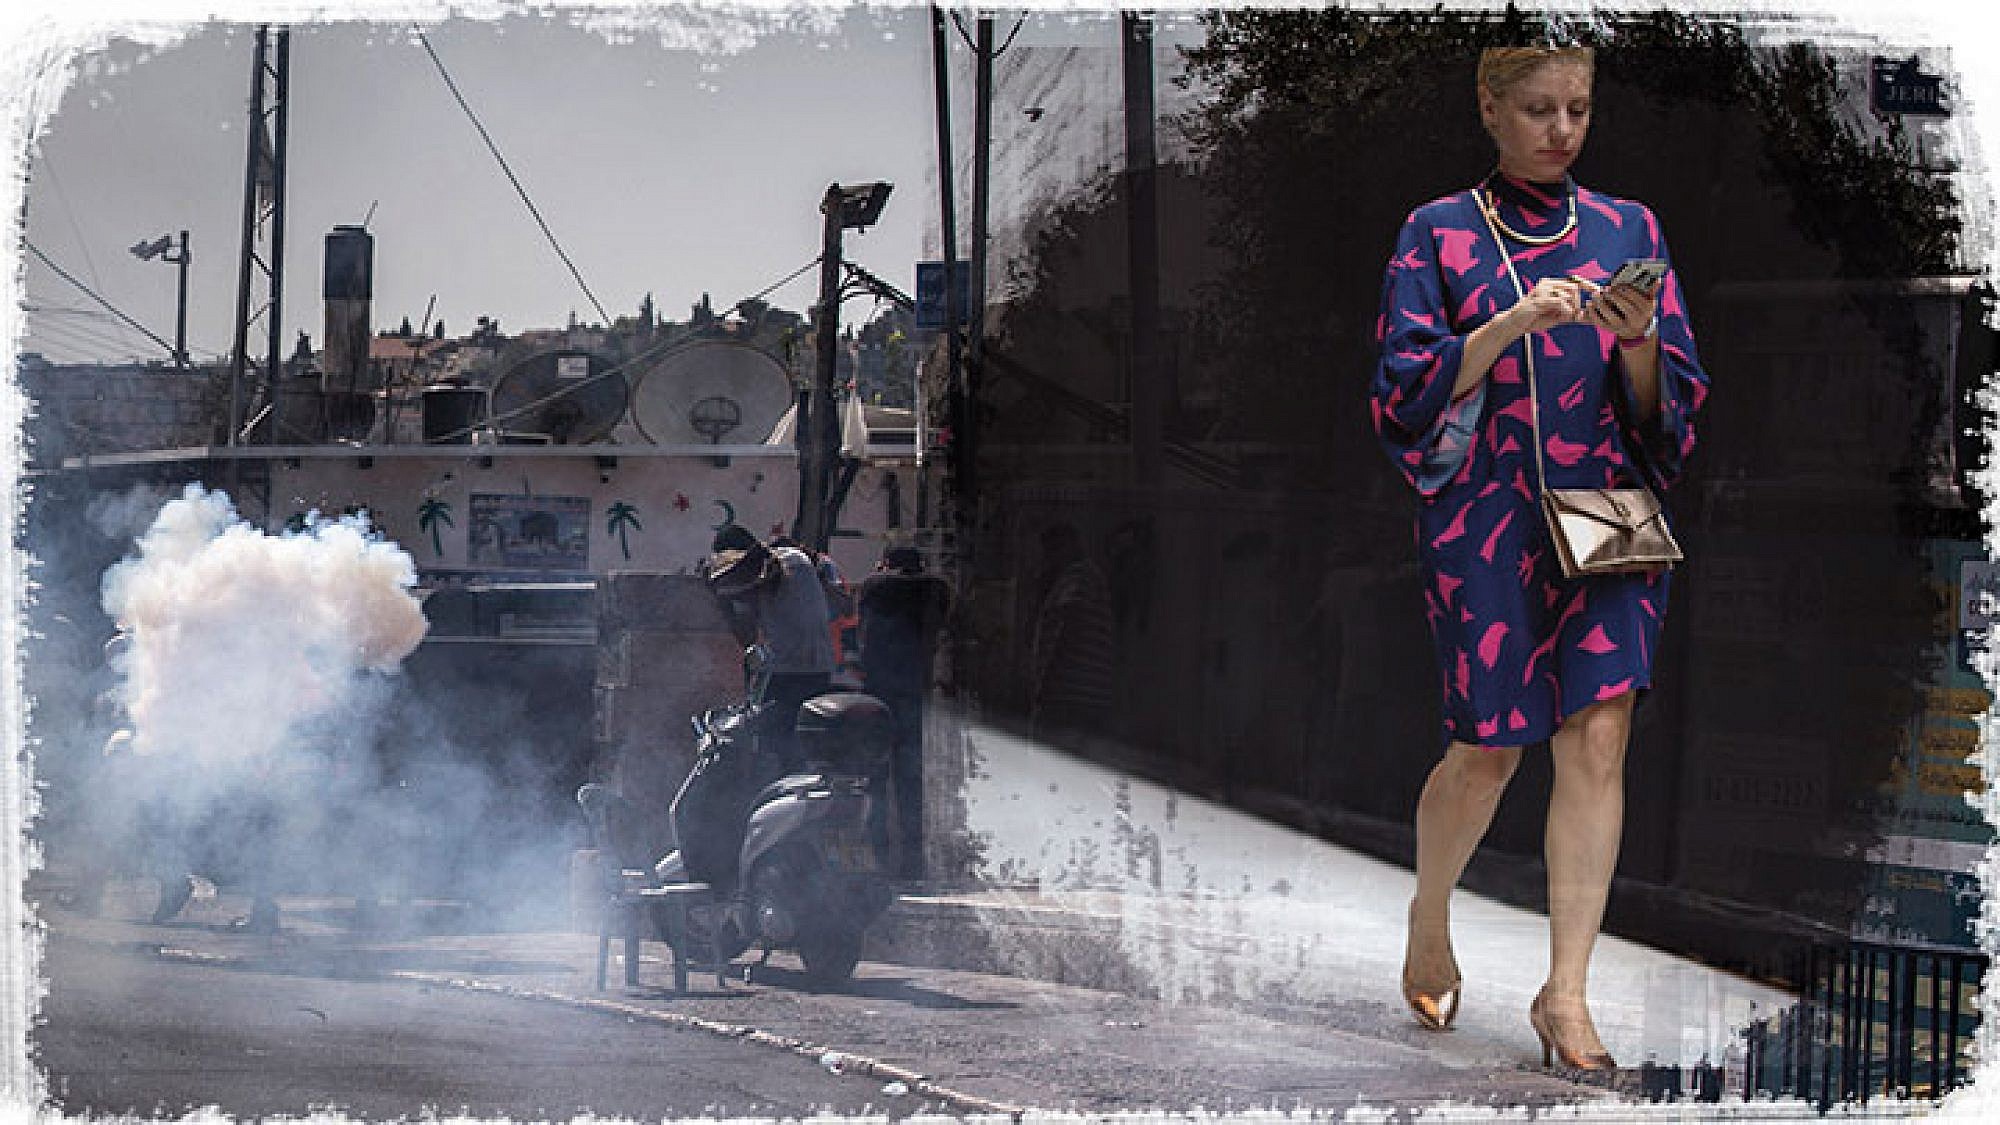 צילום הפגנה בשכונת ראס אל עמוד בירושלים: GettyImages | צילום עדי עוז בשבוע האופנה: אסף ליברפרוינד